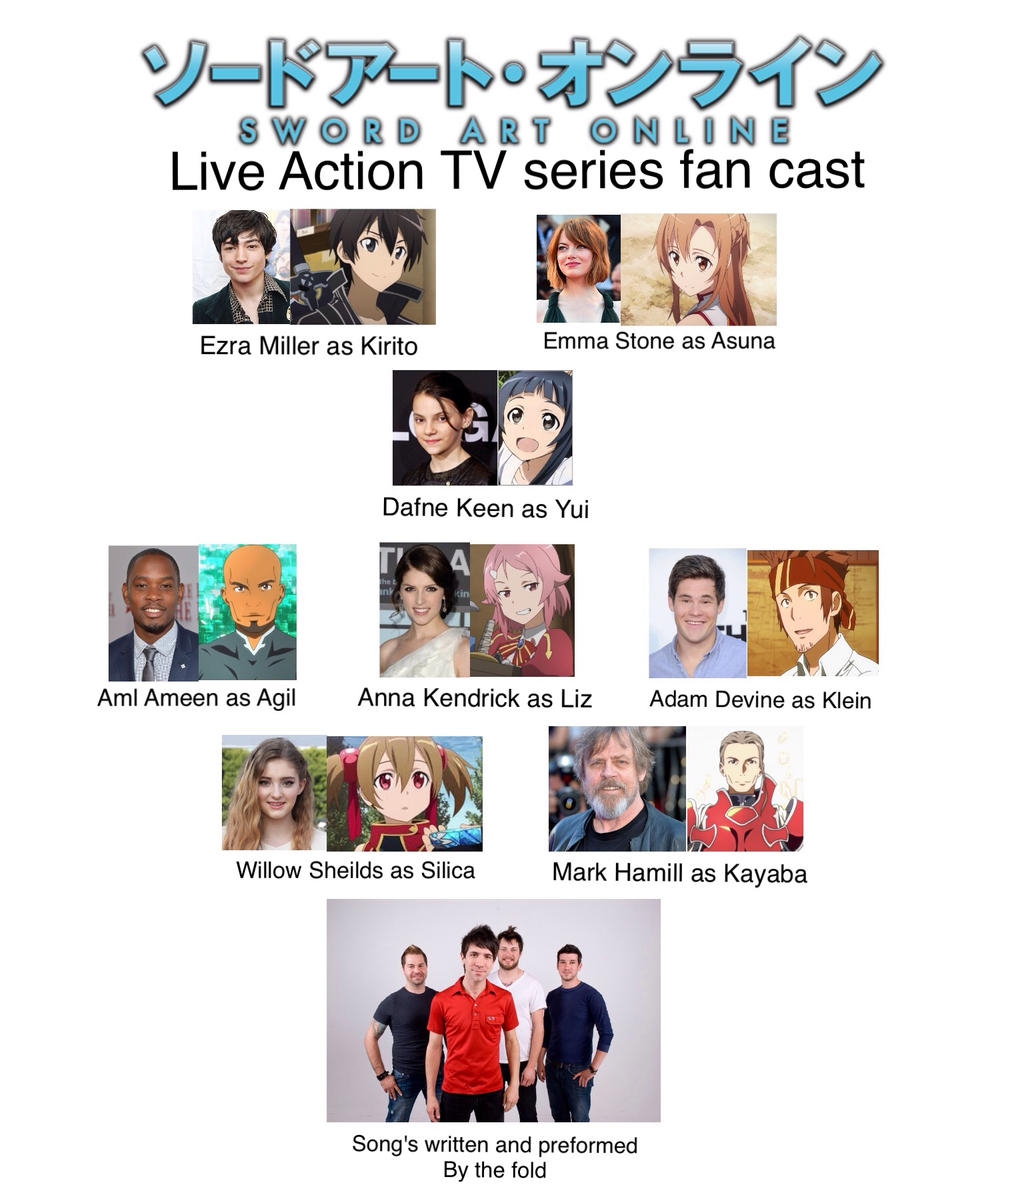 Live-Action Sword Art Online TV Series Coming to Netflix